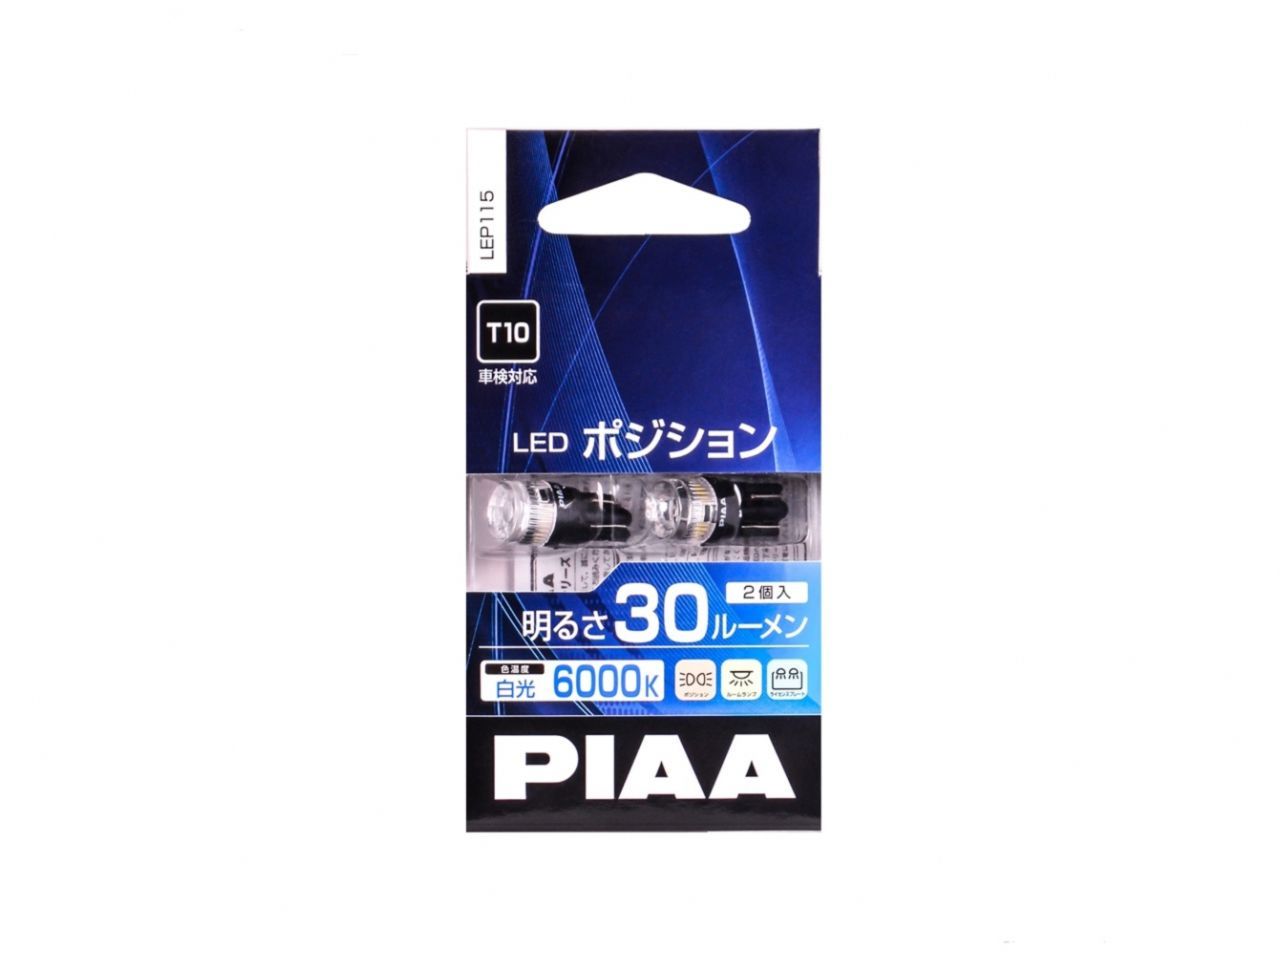 PIAA 168 LED Wedge Bulb, 30Lm, 6000K - Twin Pack